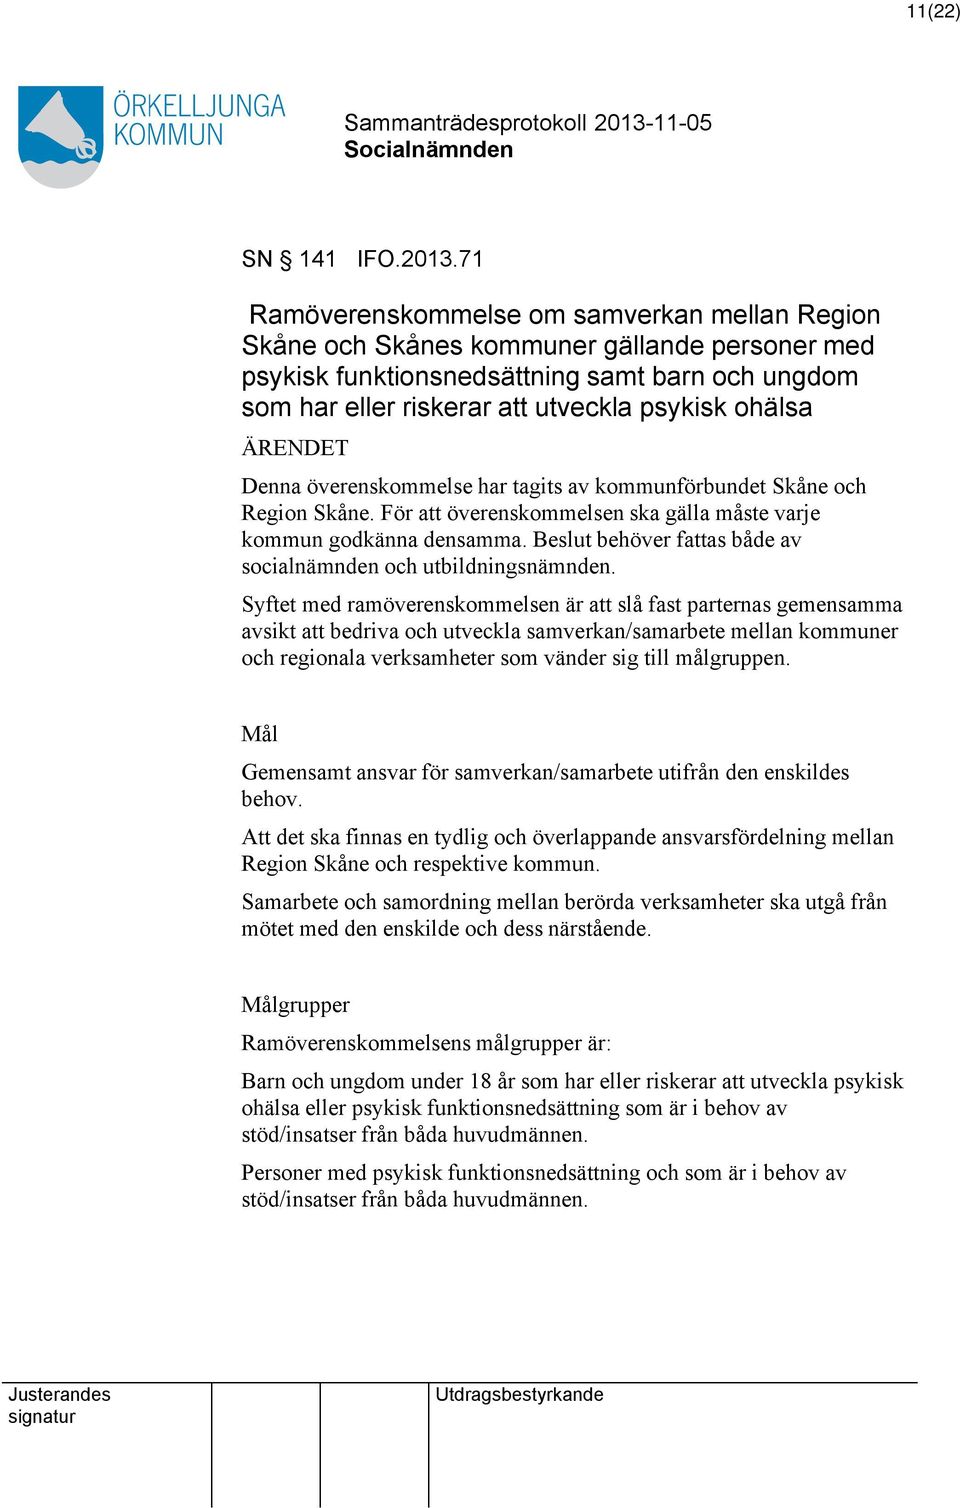 ÄRENDET Denna överenskommelse har tagits av kommunförbundet Skåne och Region Skåne. För överenskommelsen ska gälla måste varje kommun godkänna densamma.